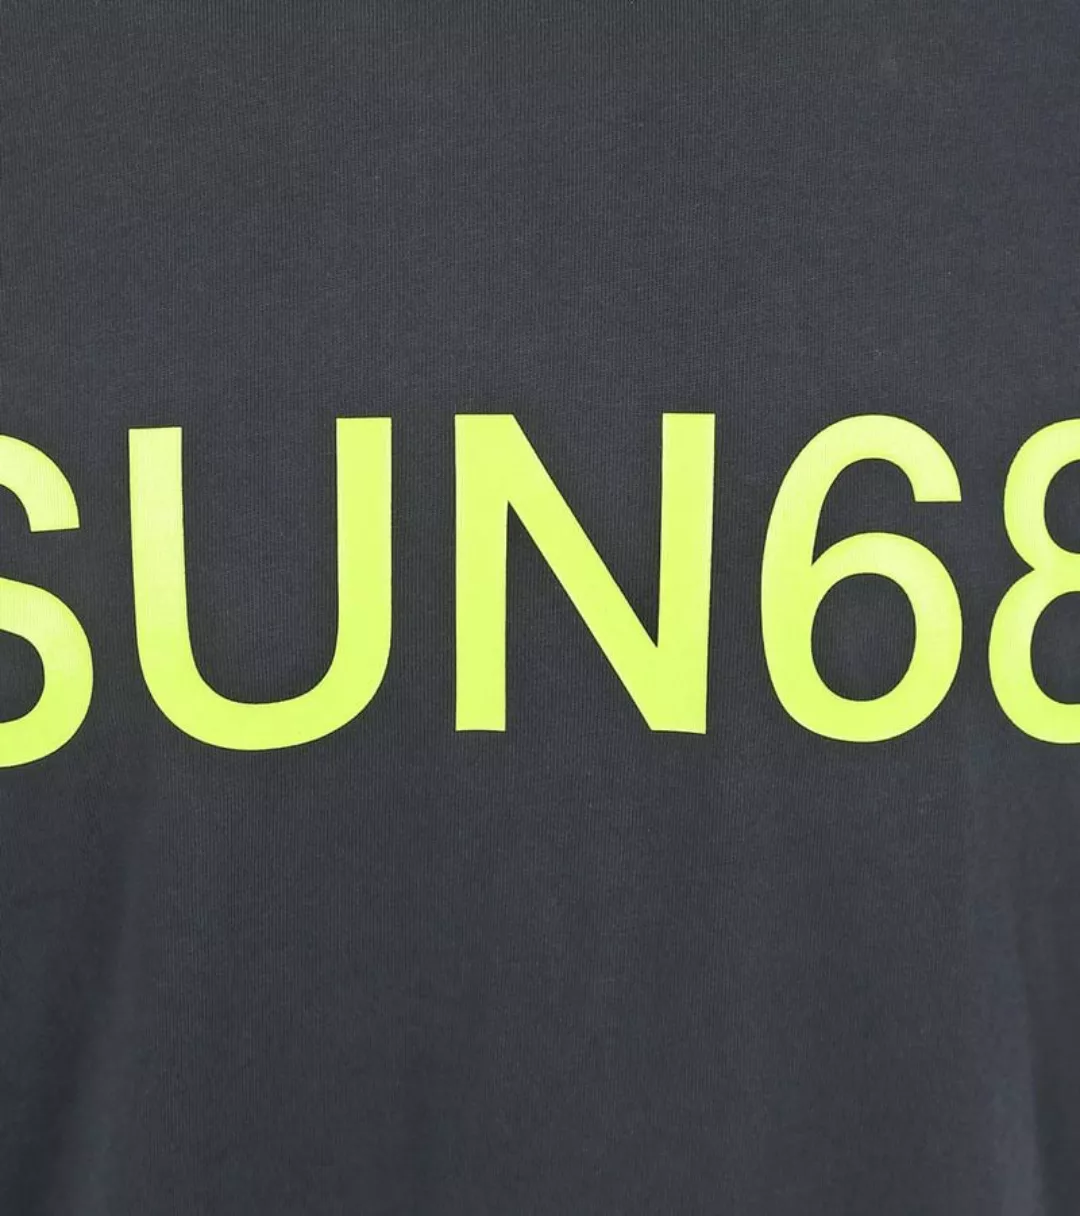 Sun68 T-Shirt Druck Logo Navy - Größe M günstig online kaufen